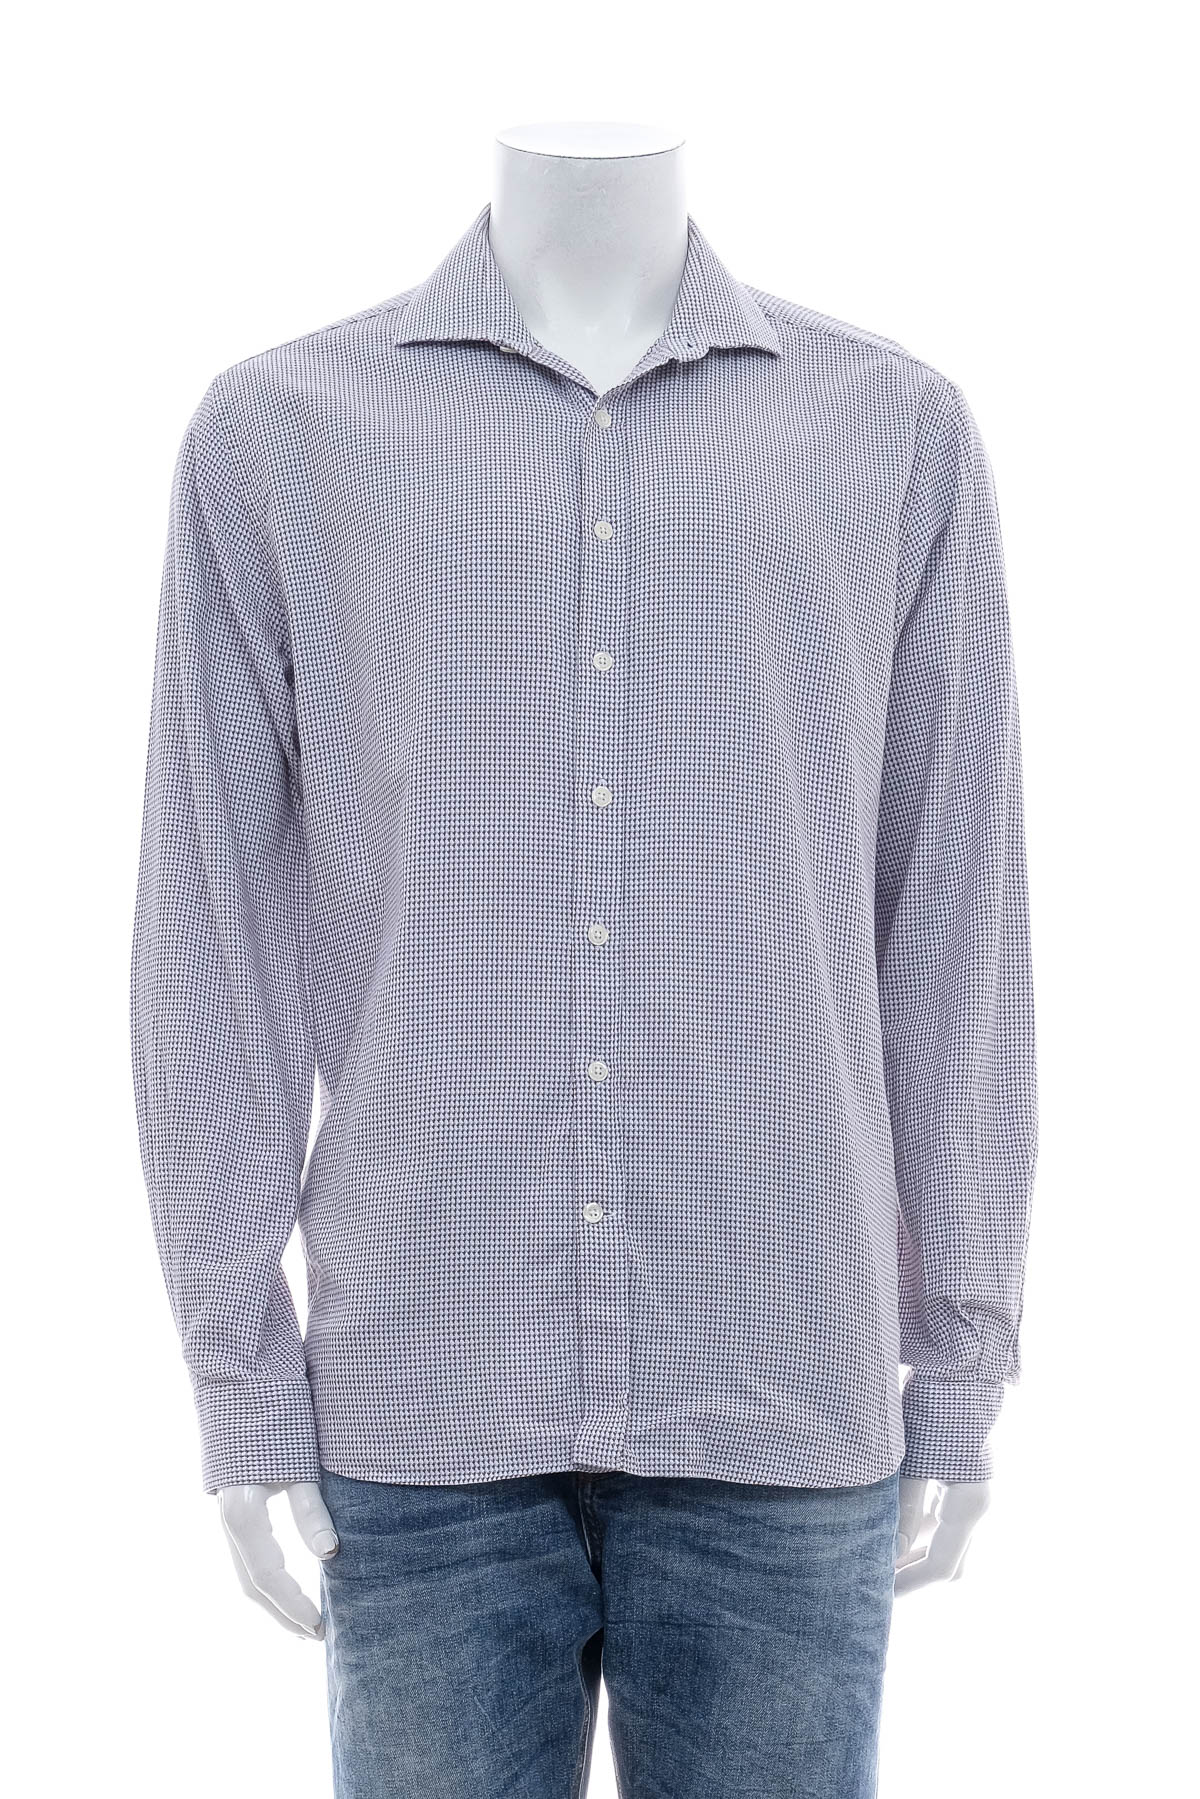 Ανδρικό πουκάμισο - Cafe Coton - 0